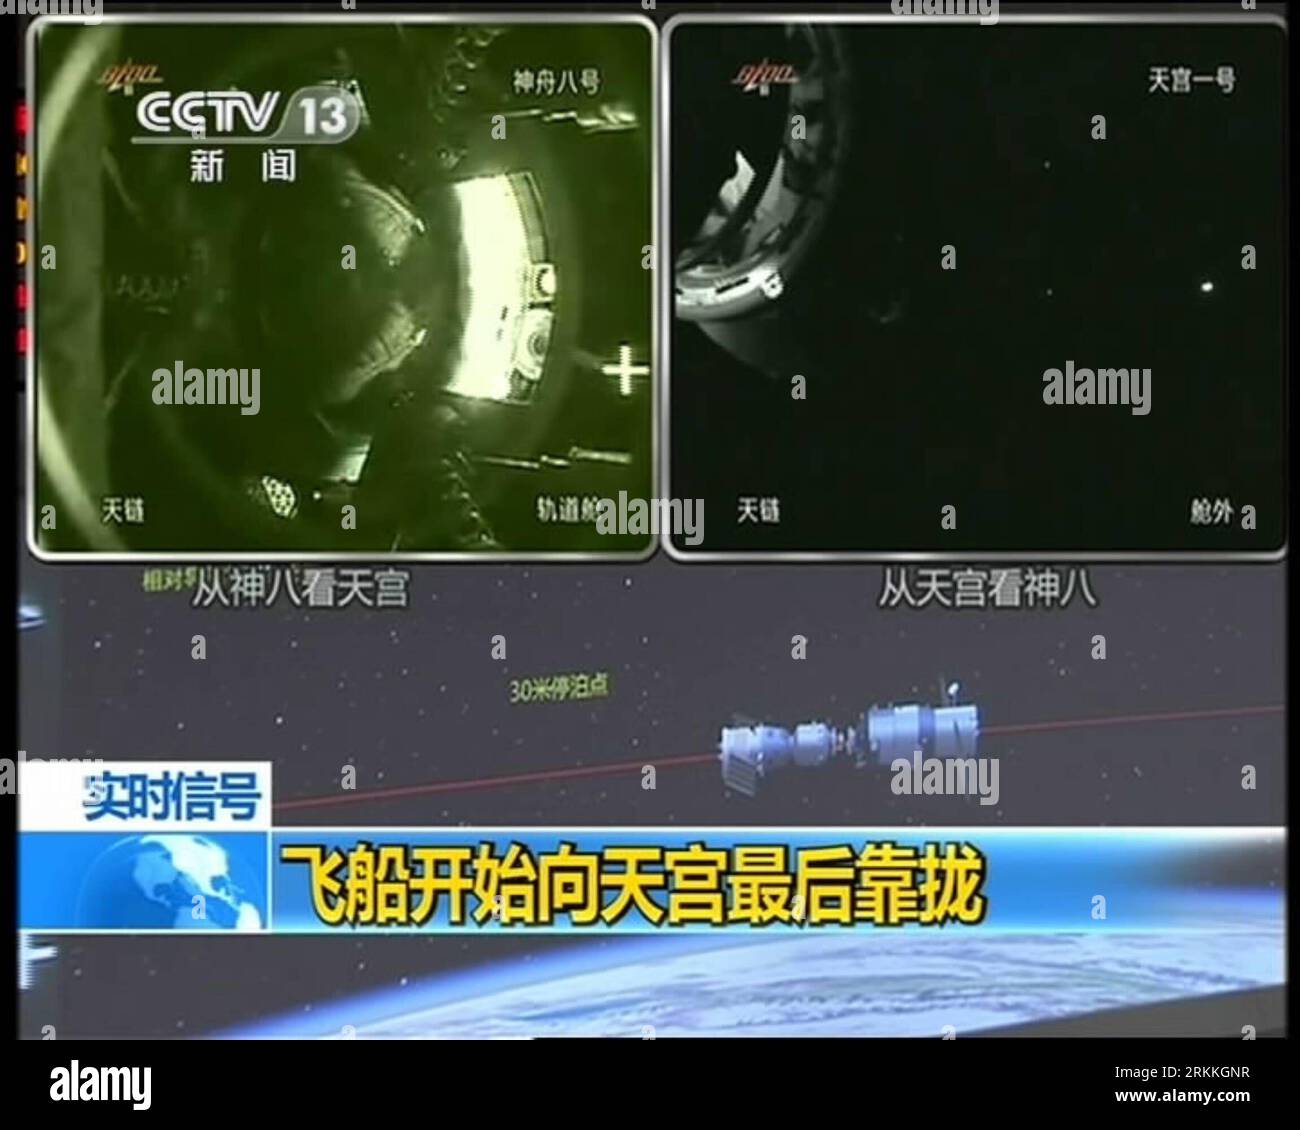 Bildnummer : 56241474 Datum : 02.11.2011 Copyright : imago/Xinhua (111103) -- PÉKIN, 3 novembre 2011 (Xinhua) -- Une capture vidéo prise à la télévision centrale de Chine le 3 novembre 2011 montre le vaisseau spatial Shenzhou-8 amarré avec le module de laboratoire spatial Tiangong-1. (Xinhua) (ljh) (TIANGONG-1&SHENZHOU-8 DOCKING)CHINA-TIANGONG-1 -SHENZHOU-8 -DOCKING (CN) PUBLICATIONxNOTxINxCHN Gesellschaft Raumfahrt Andocken Andockmanöver x0x xst 2011 quadrat premiumd 56241474 Date 02 11 2011 Copyright Imago XINHUA Pékin nov 3 2011 XINHUA une tombe vidéo prise à la télévision centrale de Chine LE 3 2011 novembre montre T Banque D'Images